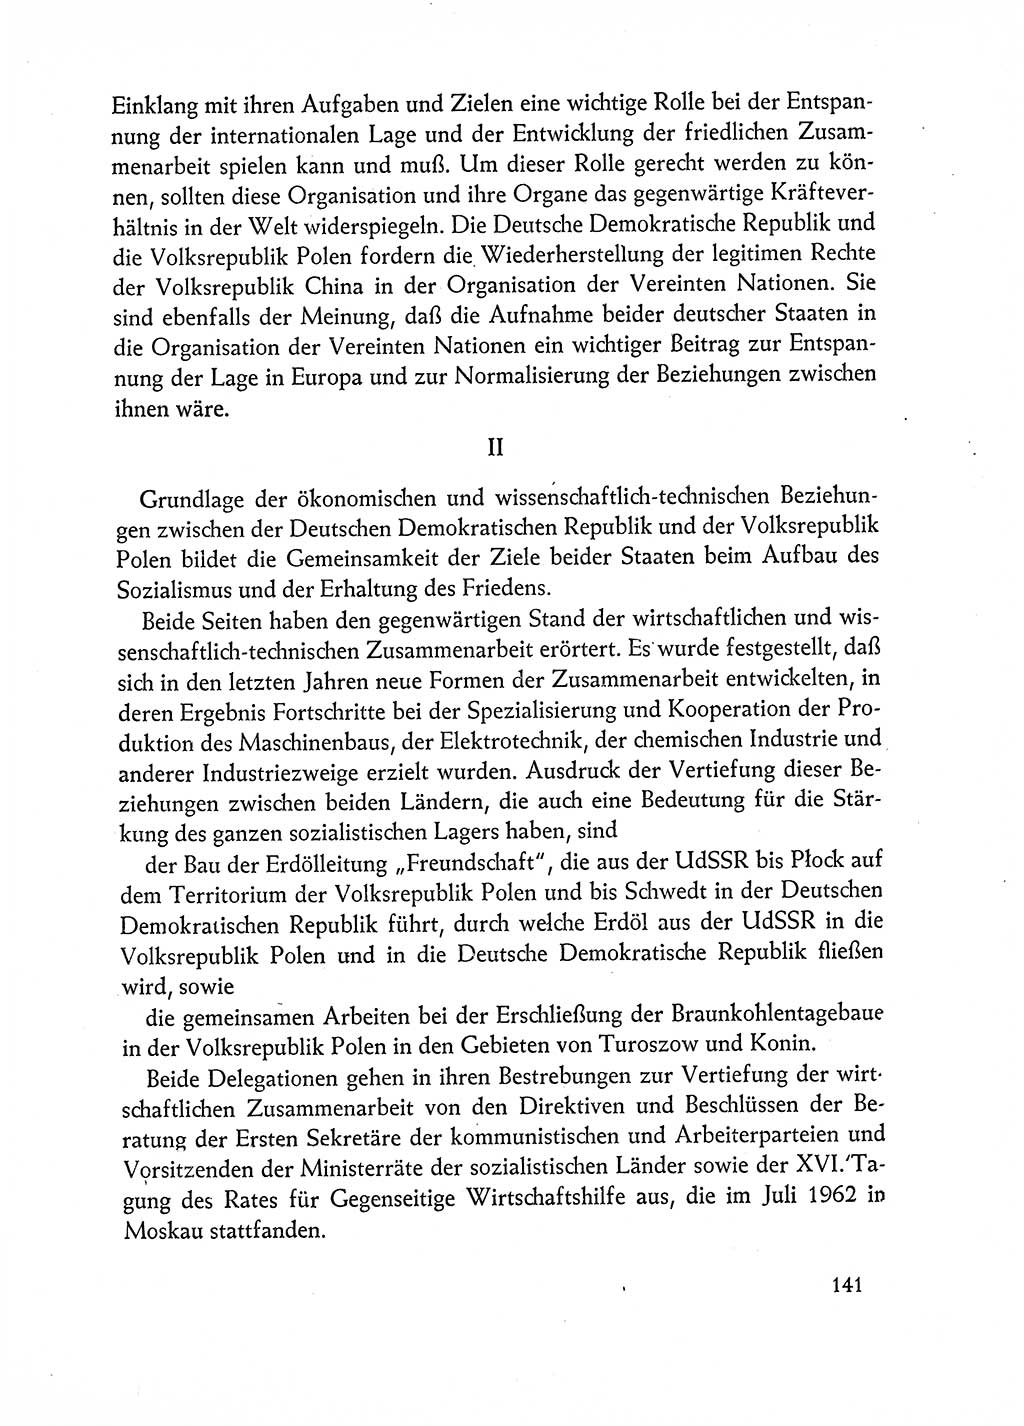 Dokumente der Sozialistischen Einheitspartei Deutschlands (SED) [Deutsche Demokratische Republik (DDR)] 1962-1963, Seite 141 (Dok. SED DDR 1962-1963, S. 141)